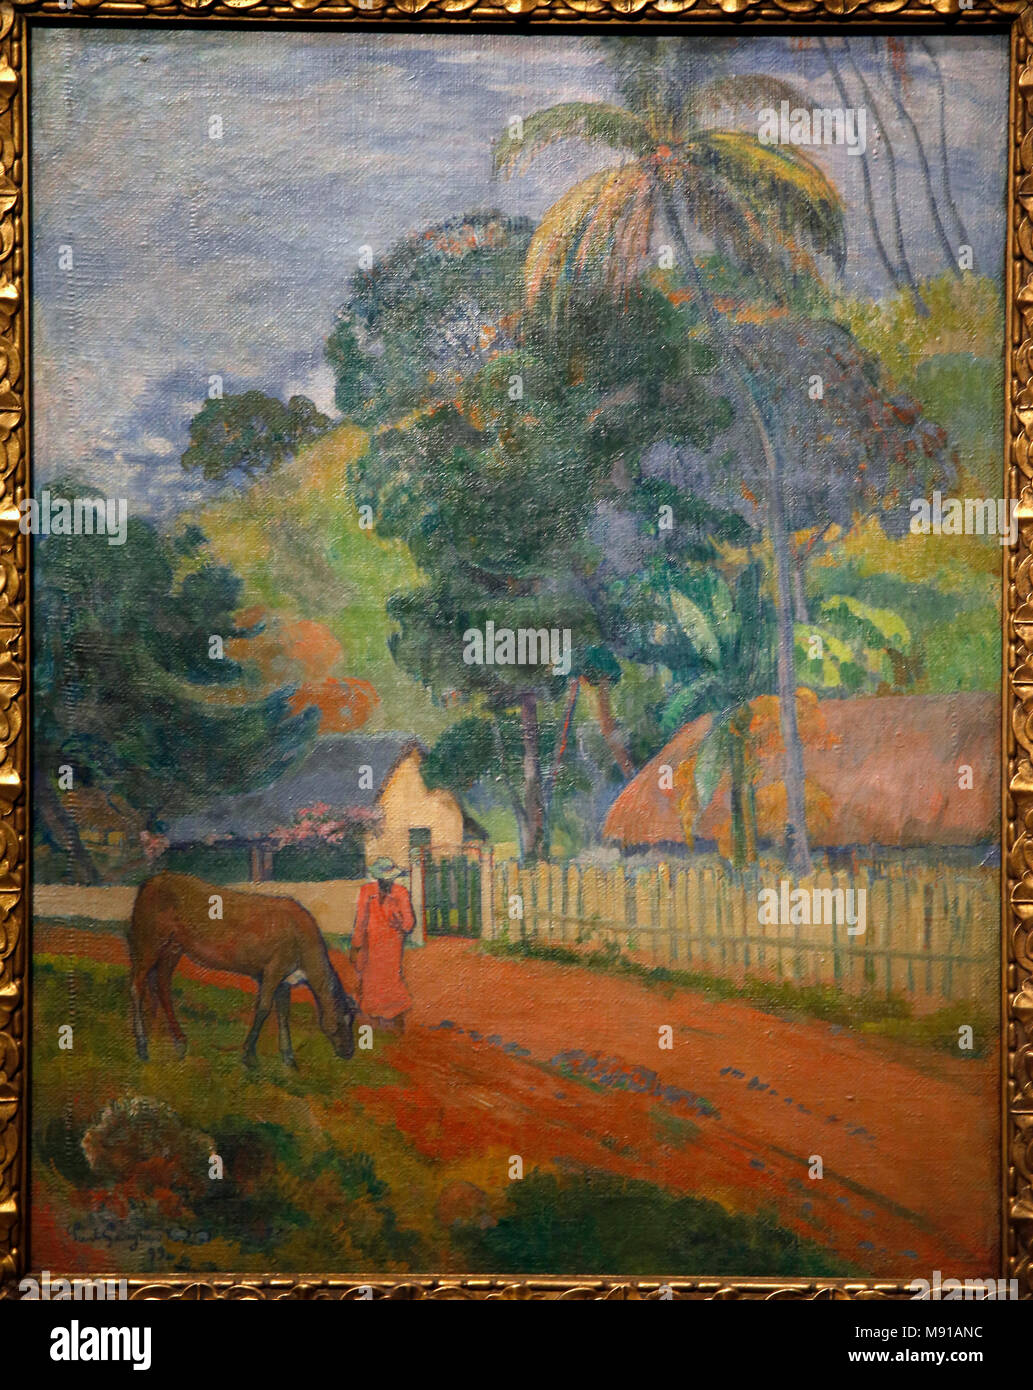 Paul Gauguin, Landschaft (ein Pferd auf einer Straße, Tahiti), 1899, Öl auf Leinwand. Shchukin Sammlung, Puschkin Museum der Schönen Künste, Moskau. Ich schoss während ausgestellt Stockfoto